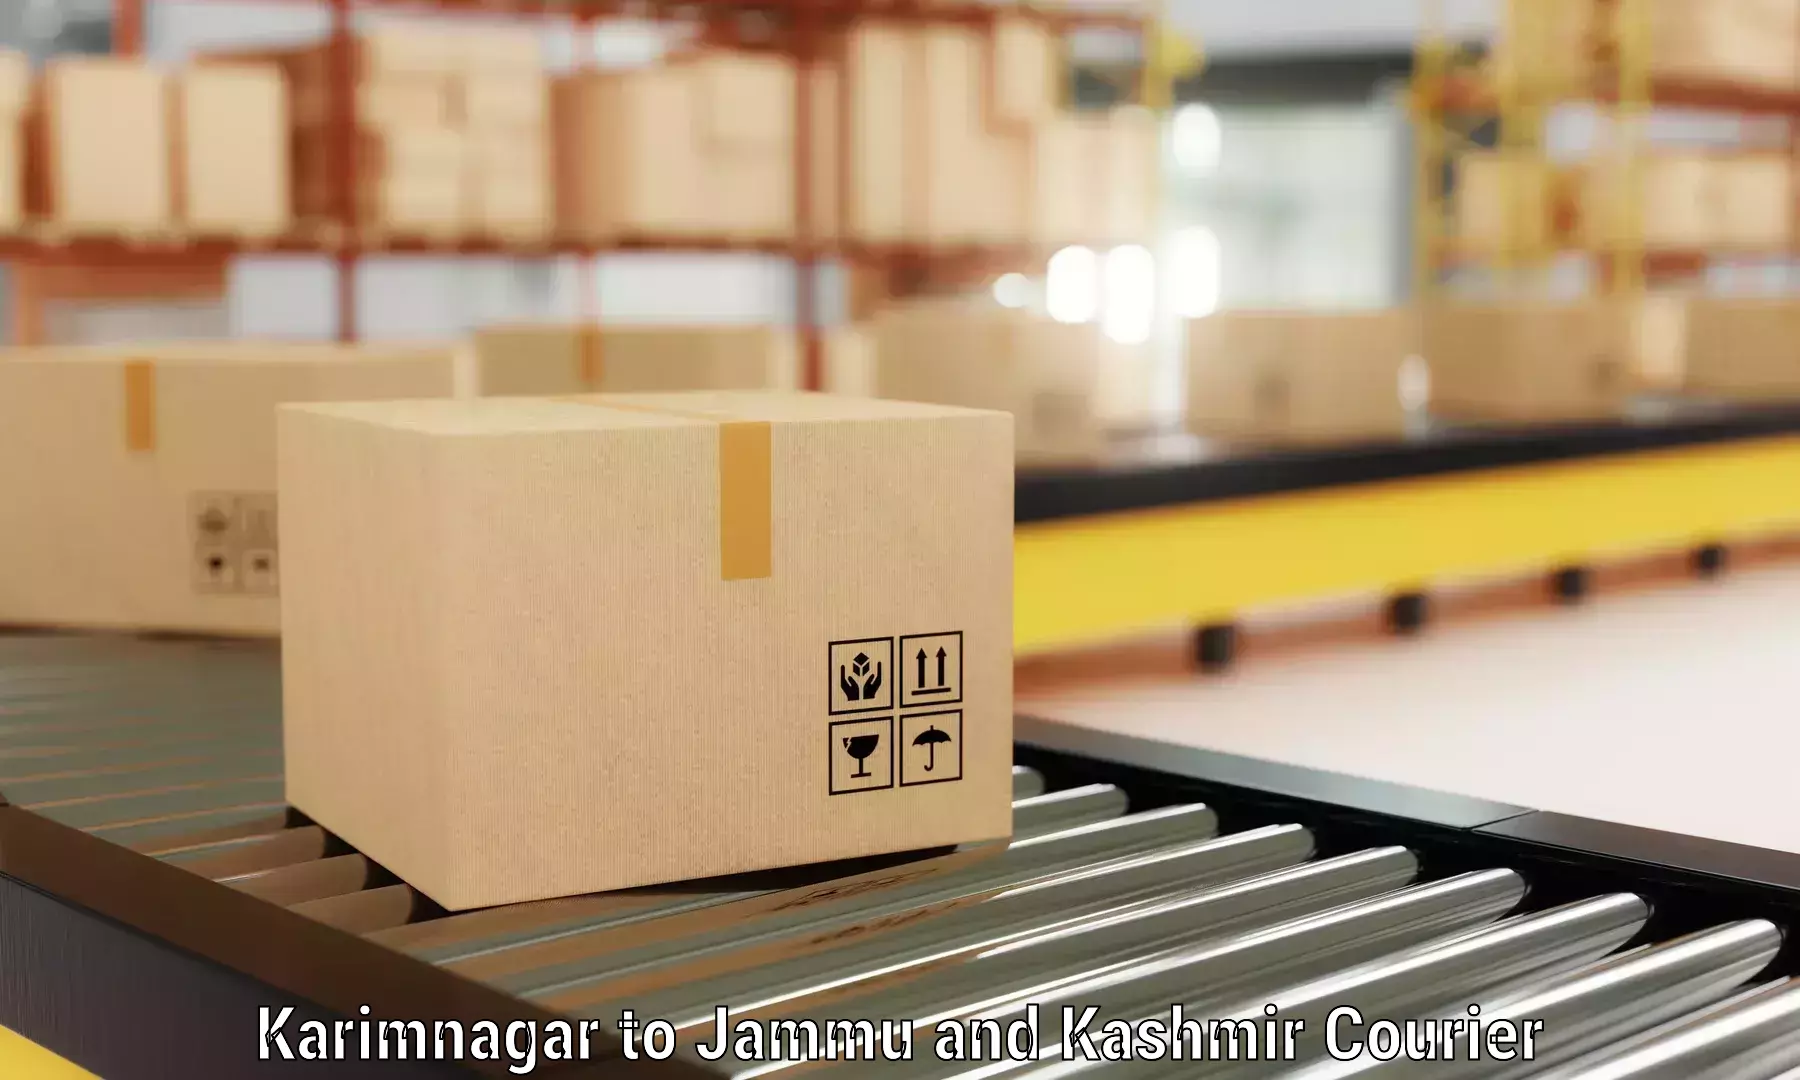 Furniture delivery service Karimnagar to Billawar